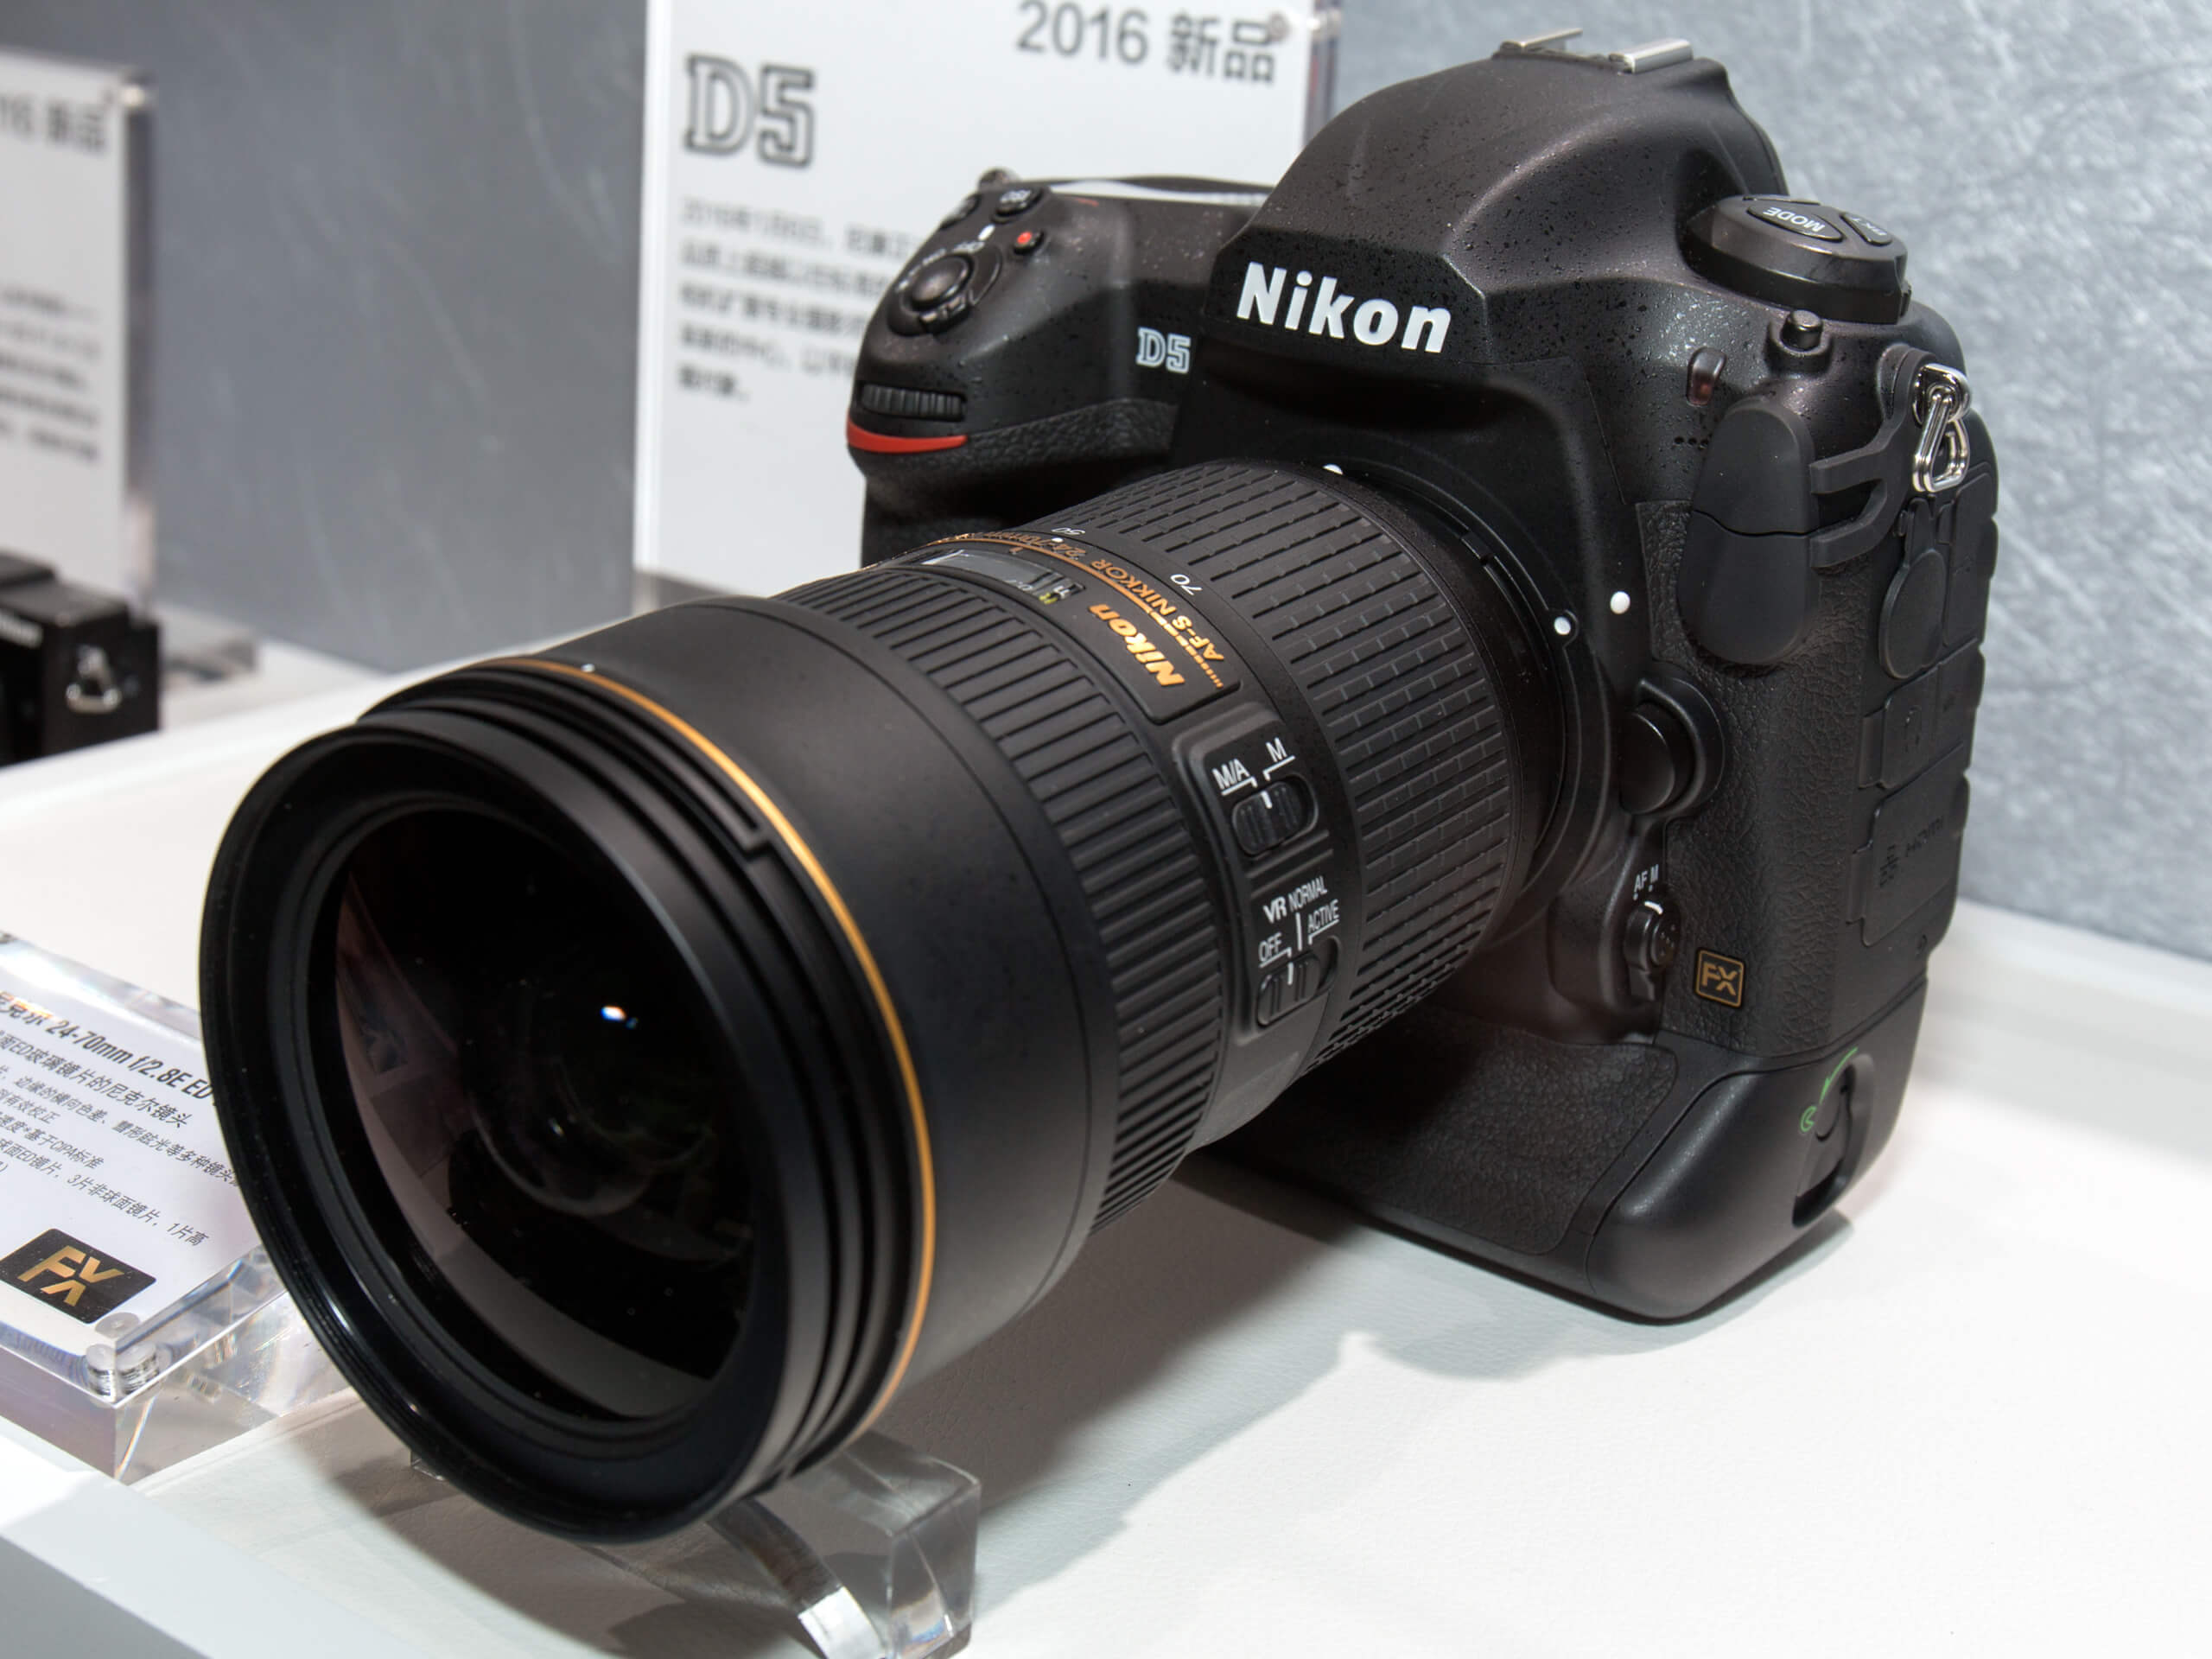 Nikon D5 